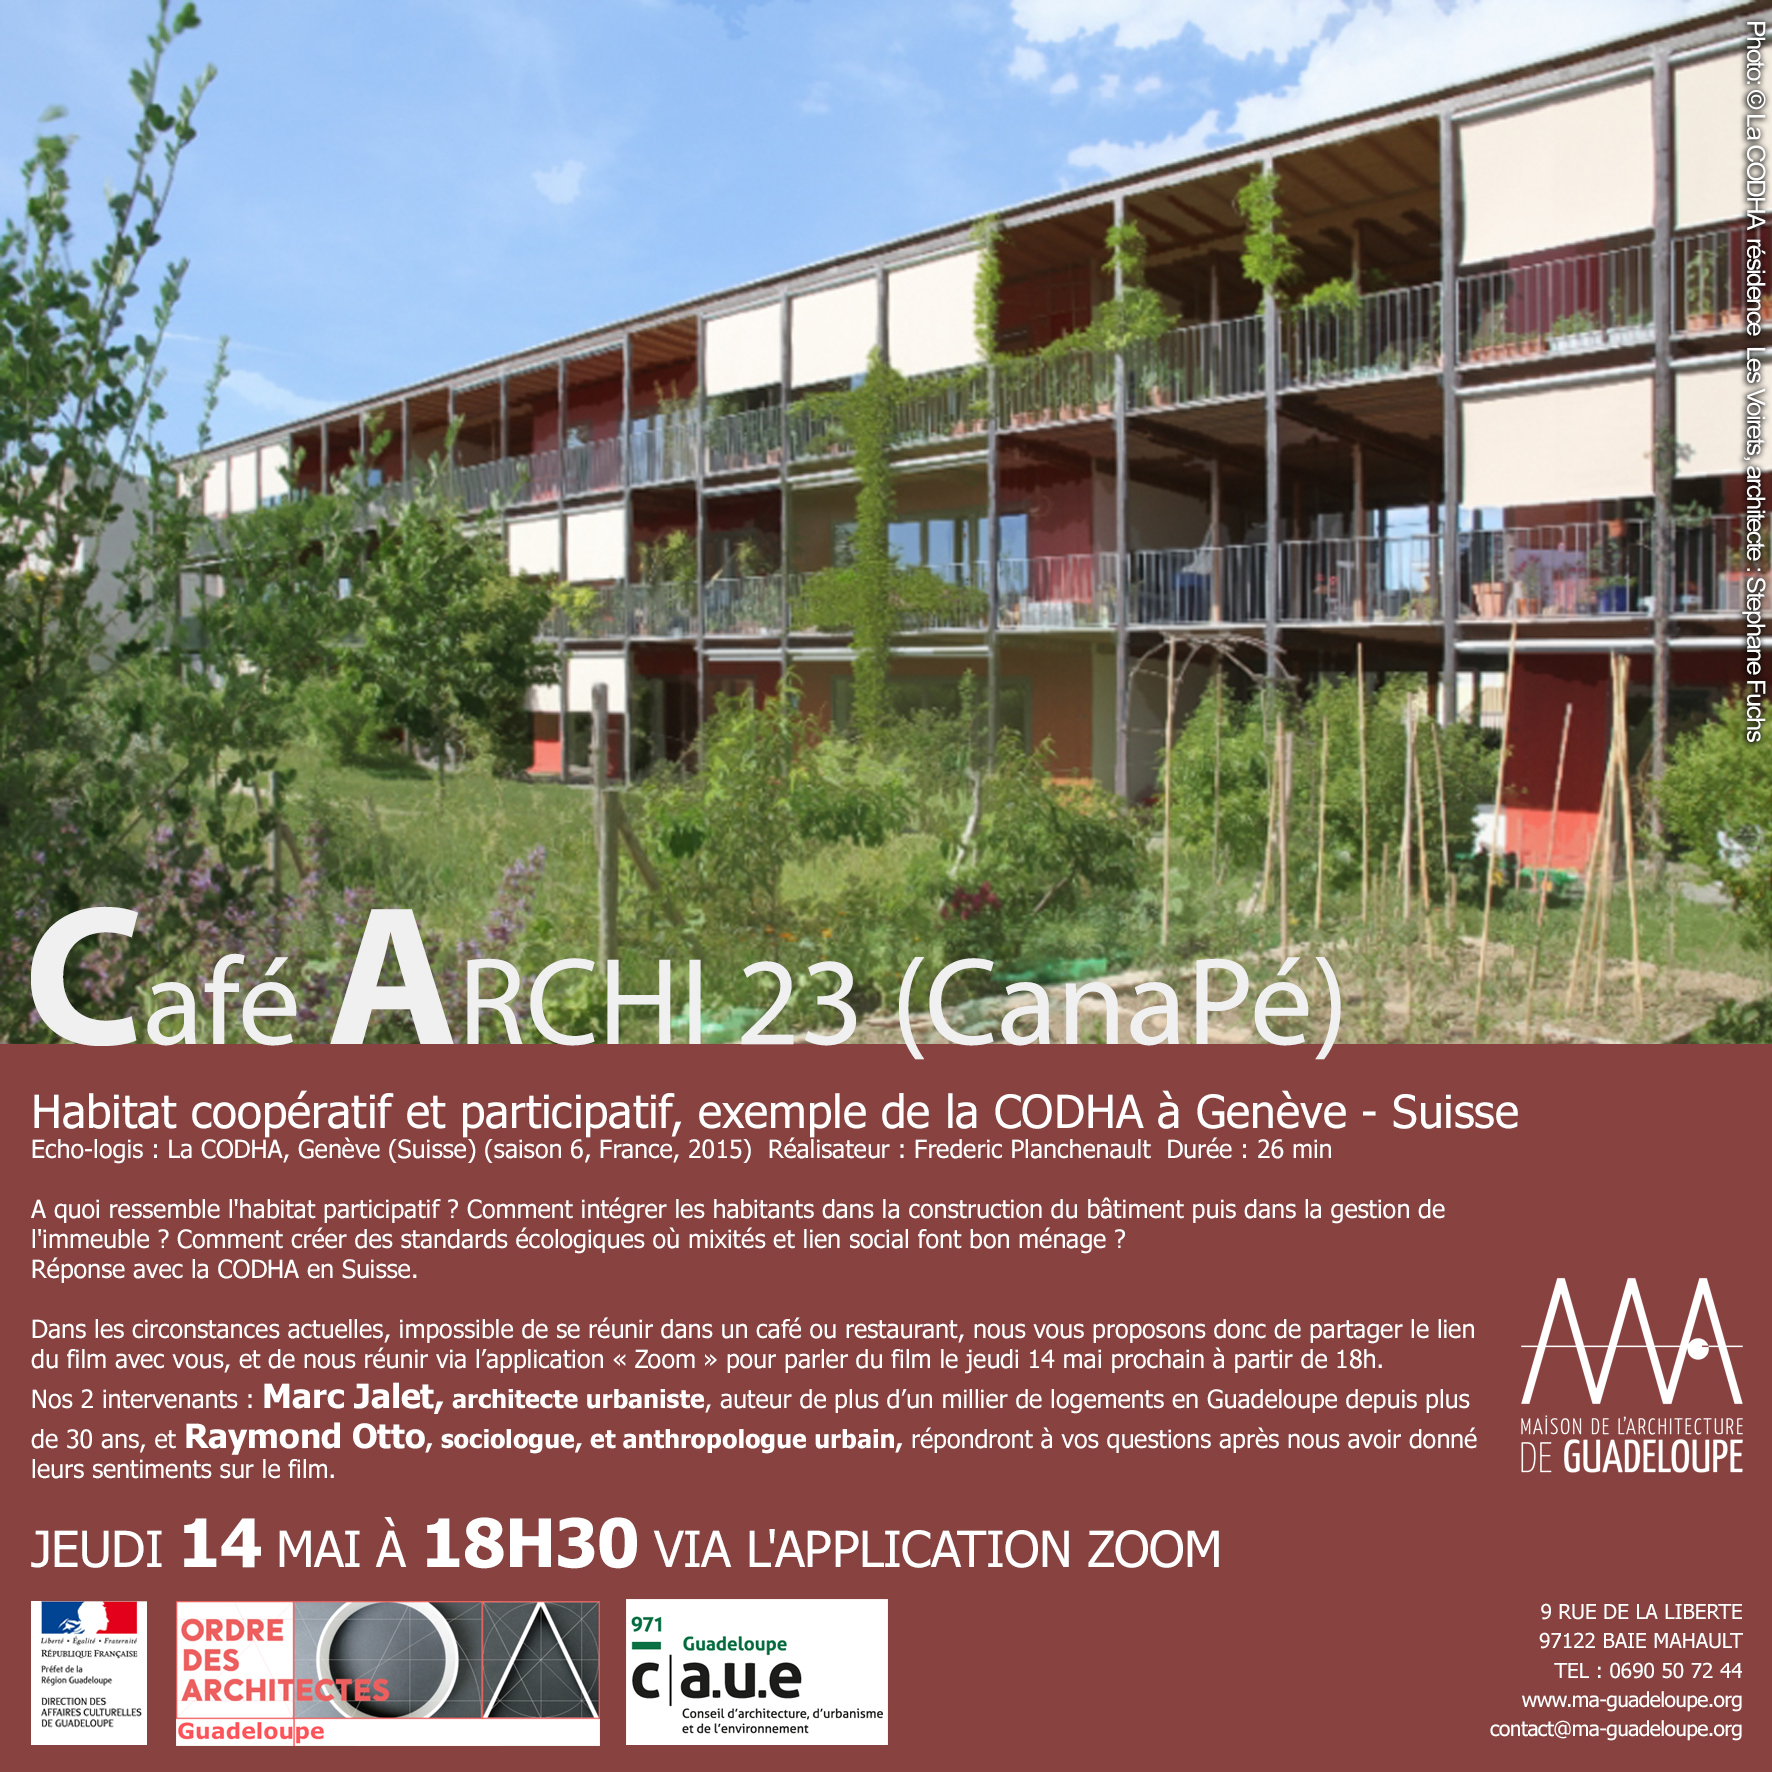 You are currently viewing Café Archi Canapé Jeudi 14 mai à 18h30 de #chezvous sur ZOOM